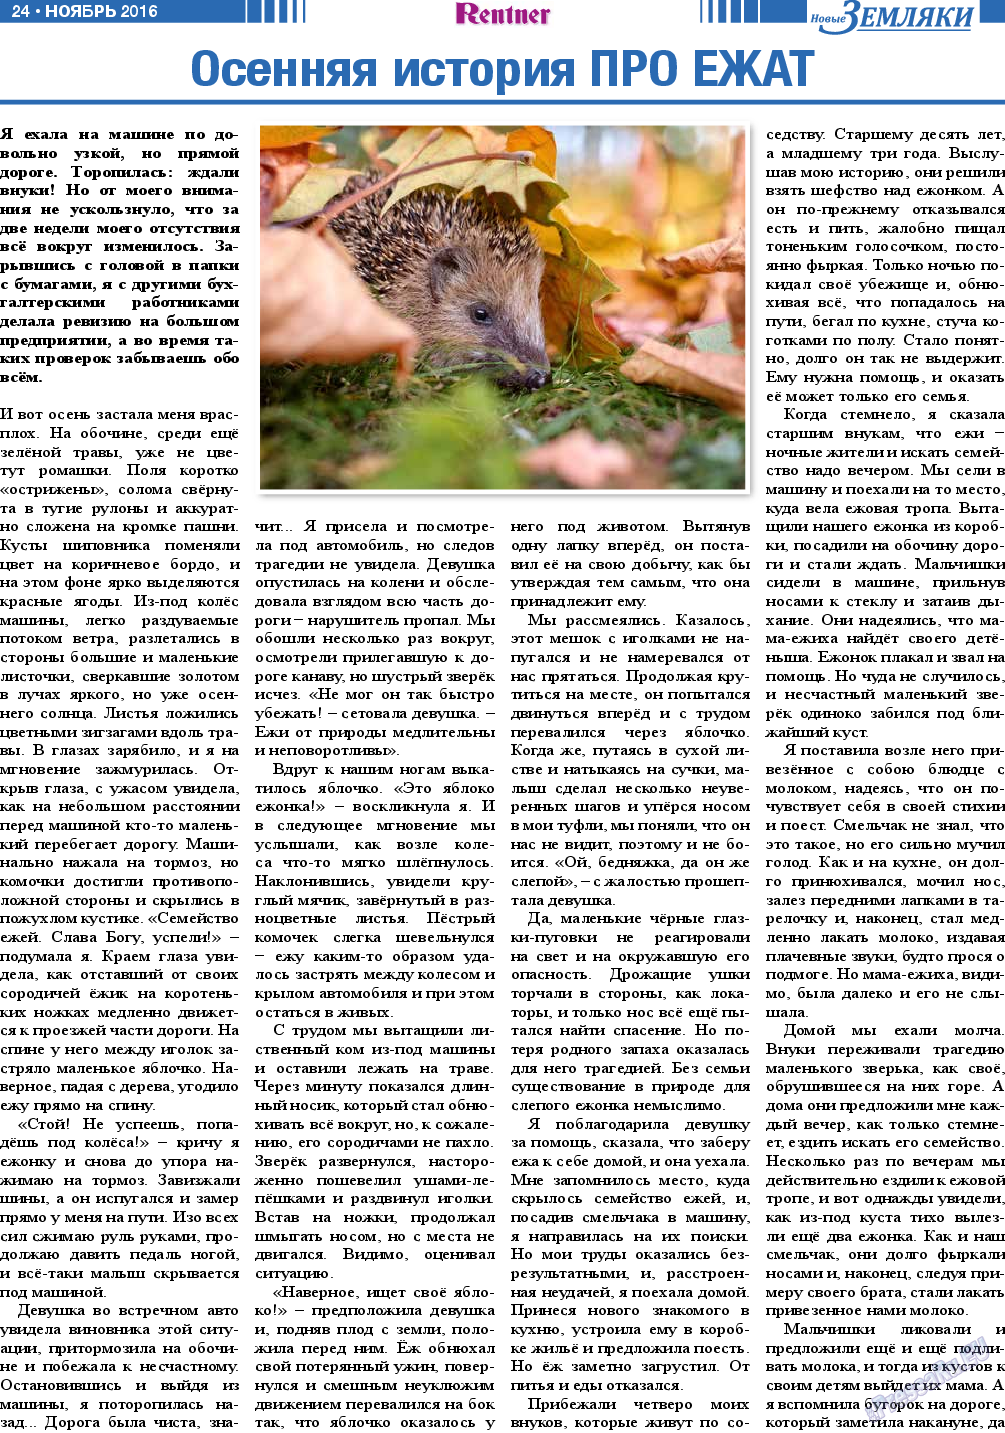 Новые Земляки, газета. 2016 №11 стр.24